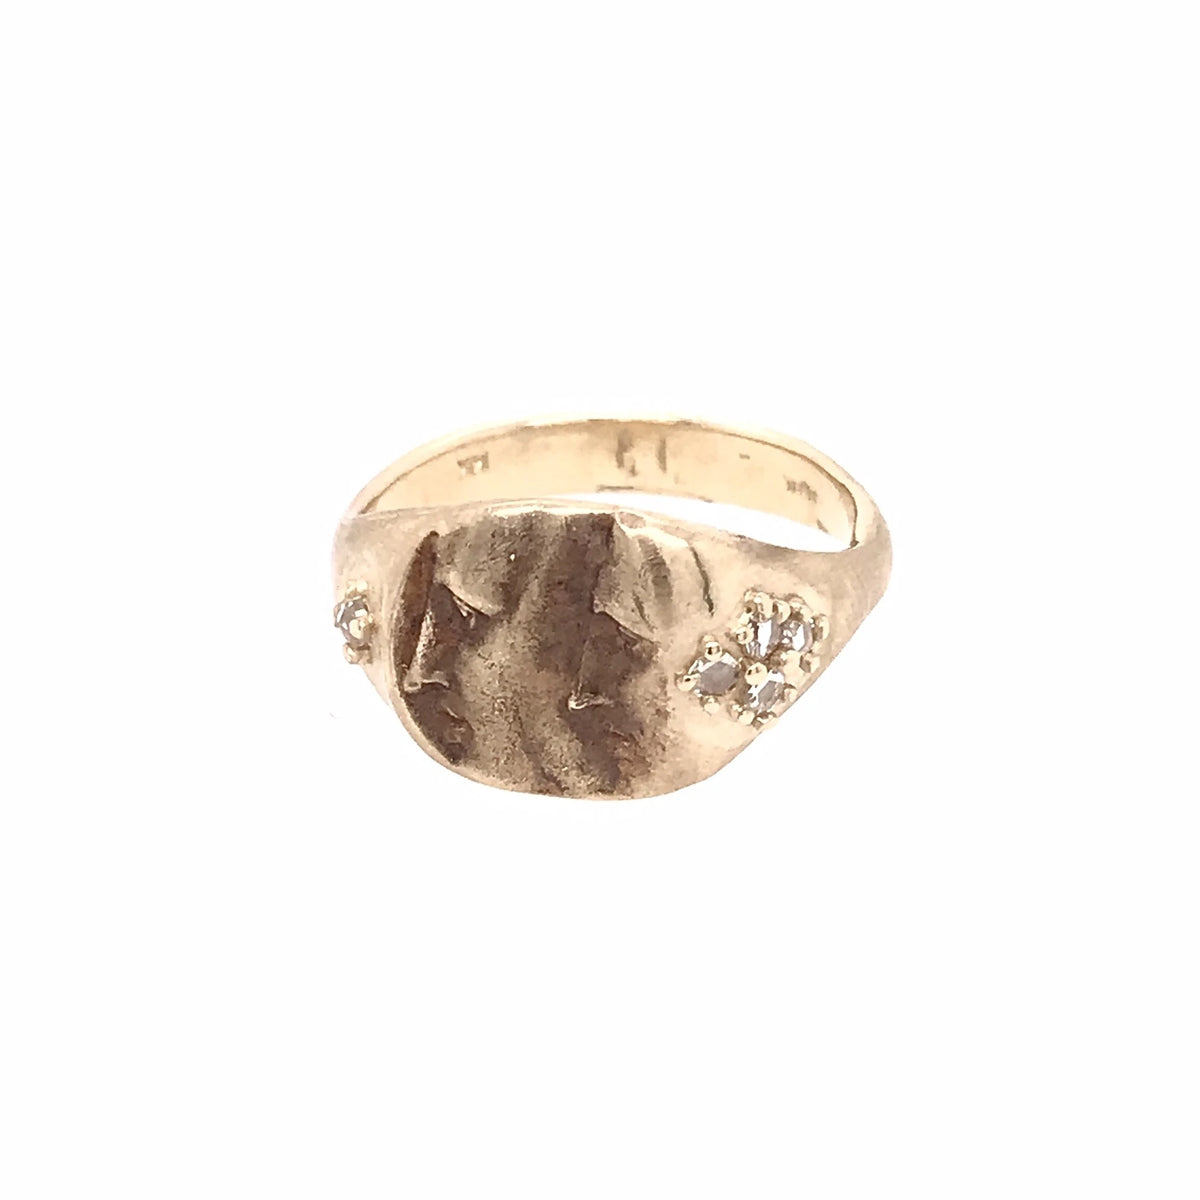 Two-Faced Rose Cut Diamond Artifact Ring